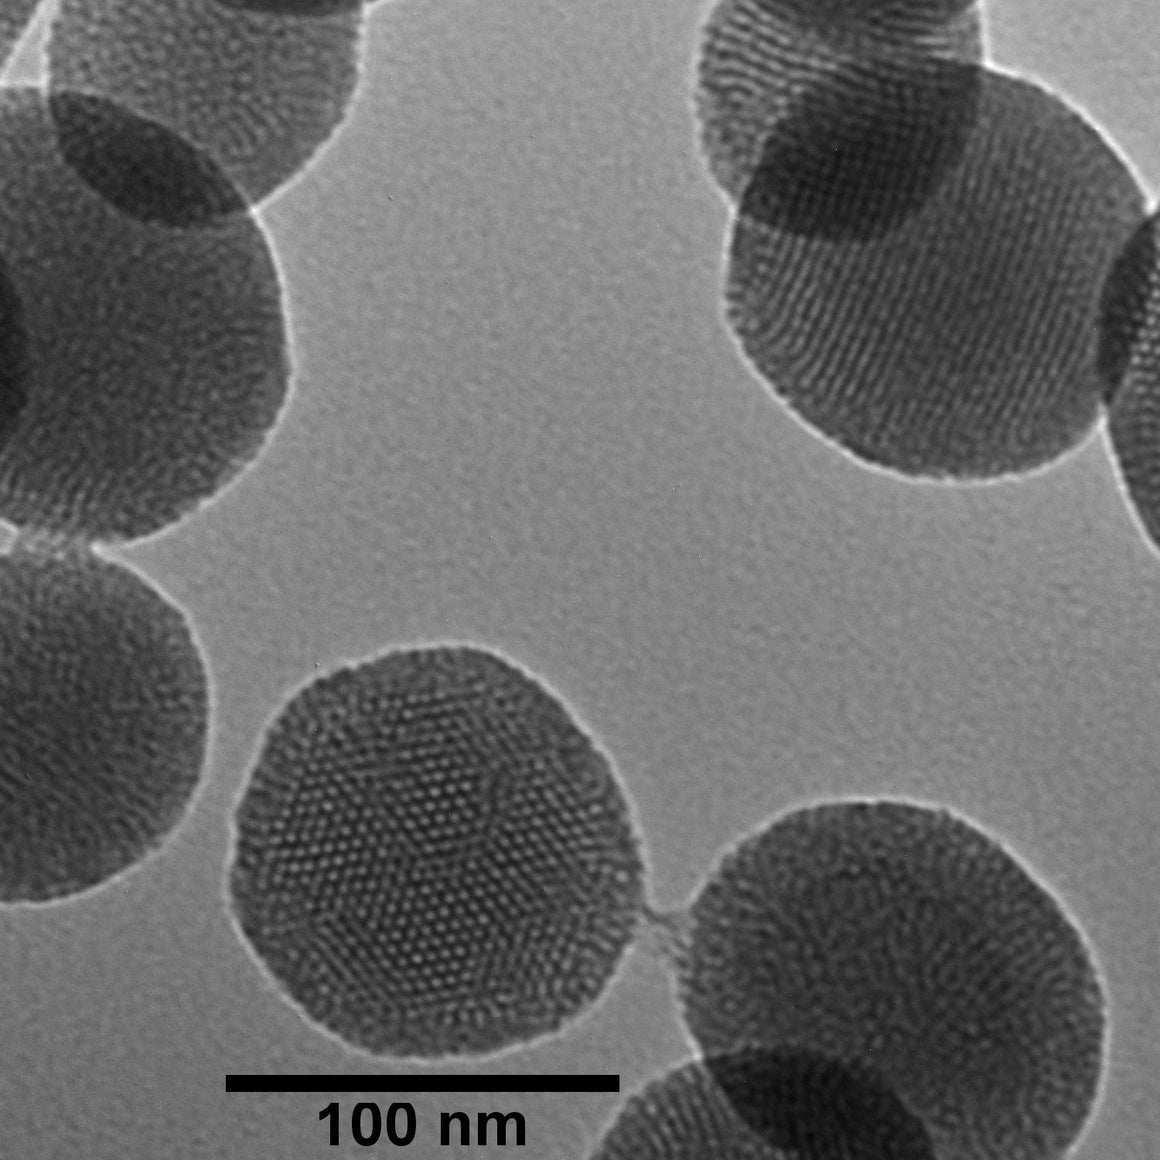 NanoXact Mesoporous Silica Nanospheres – Aminated (Dried)